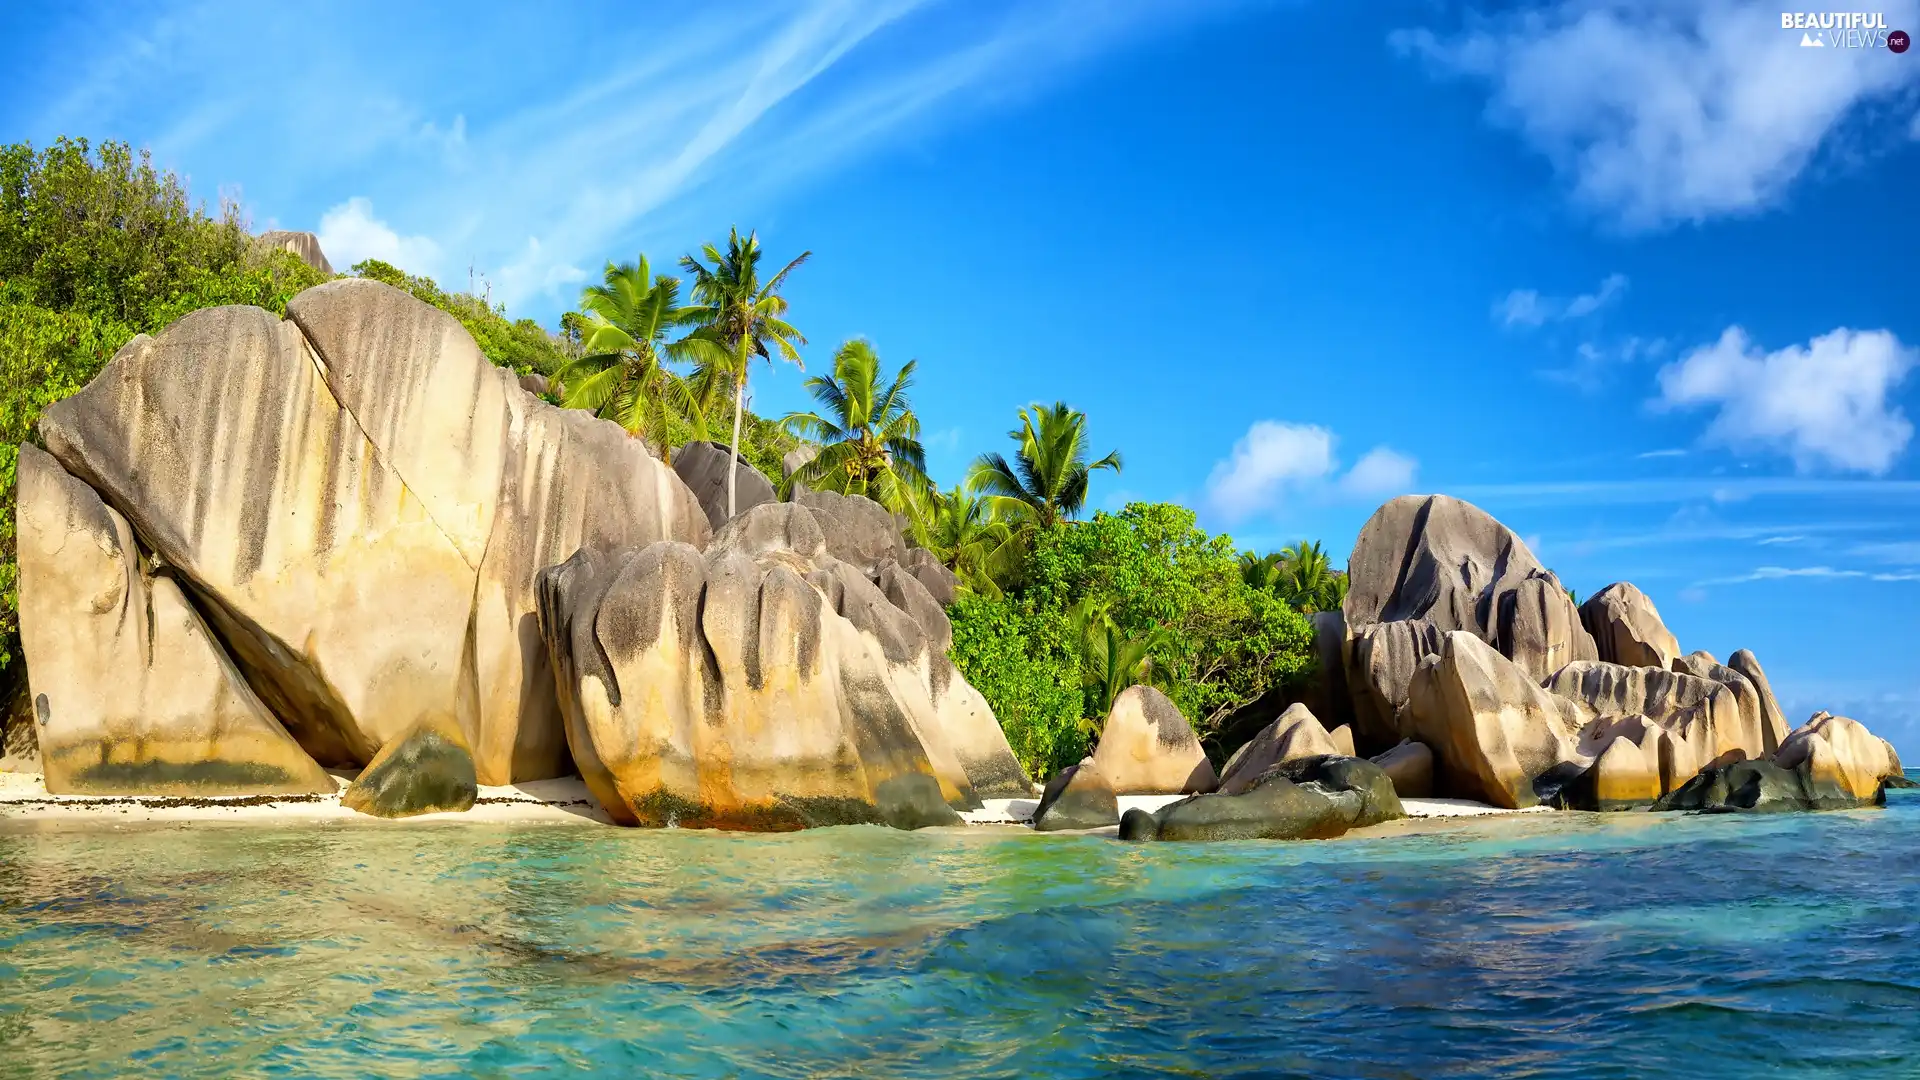 Anse Source d Argent Beach, sea, VEGETATION, rocks, Palms, La Digue Island, Seychelles, boulders